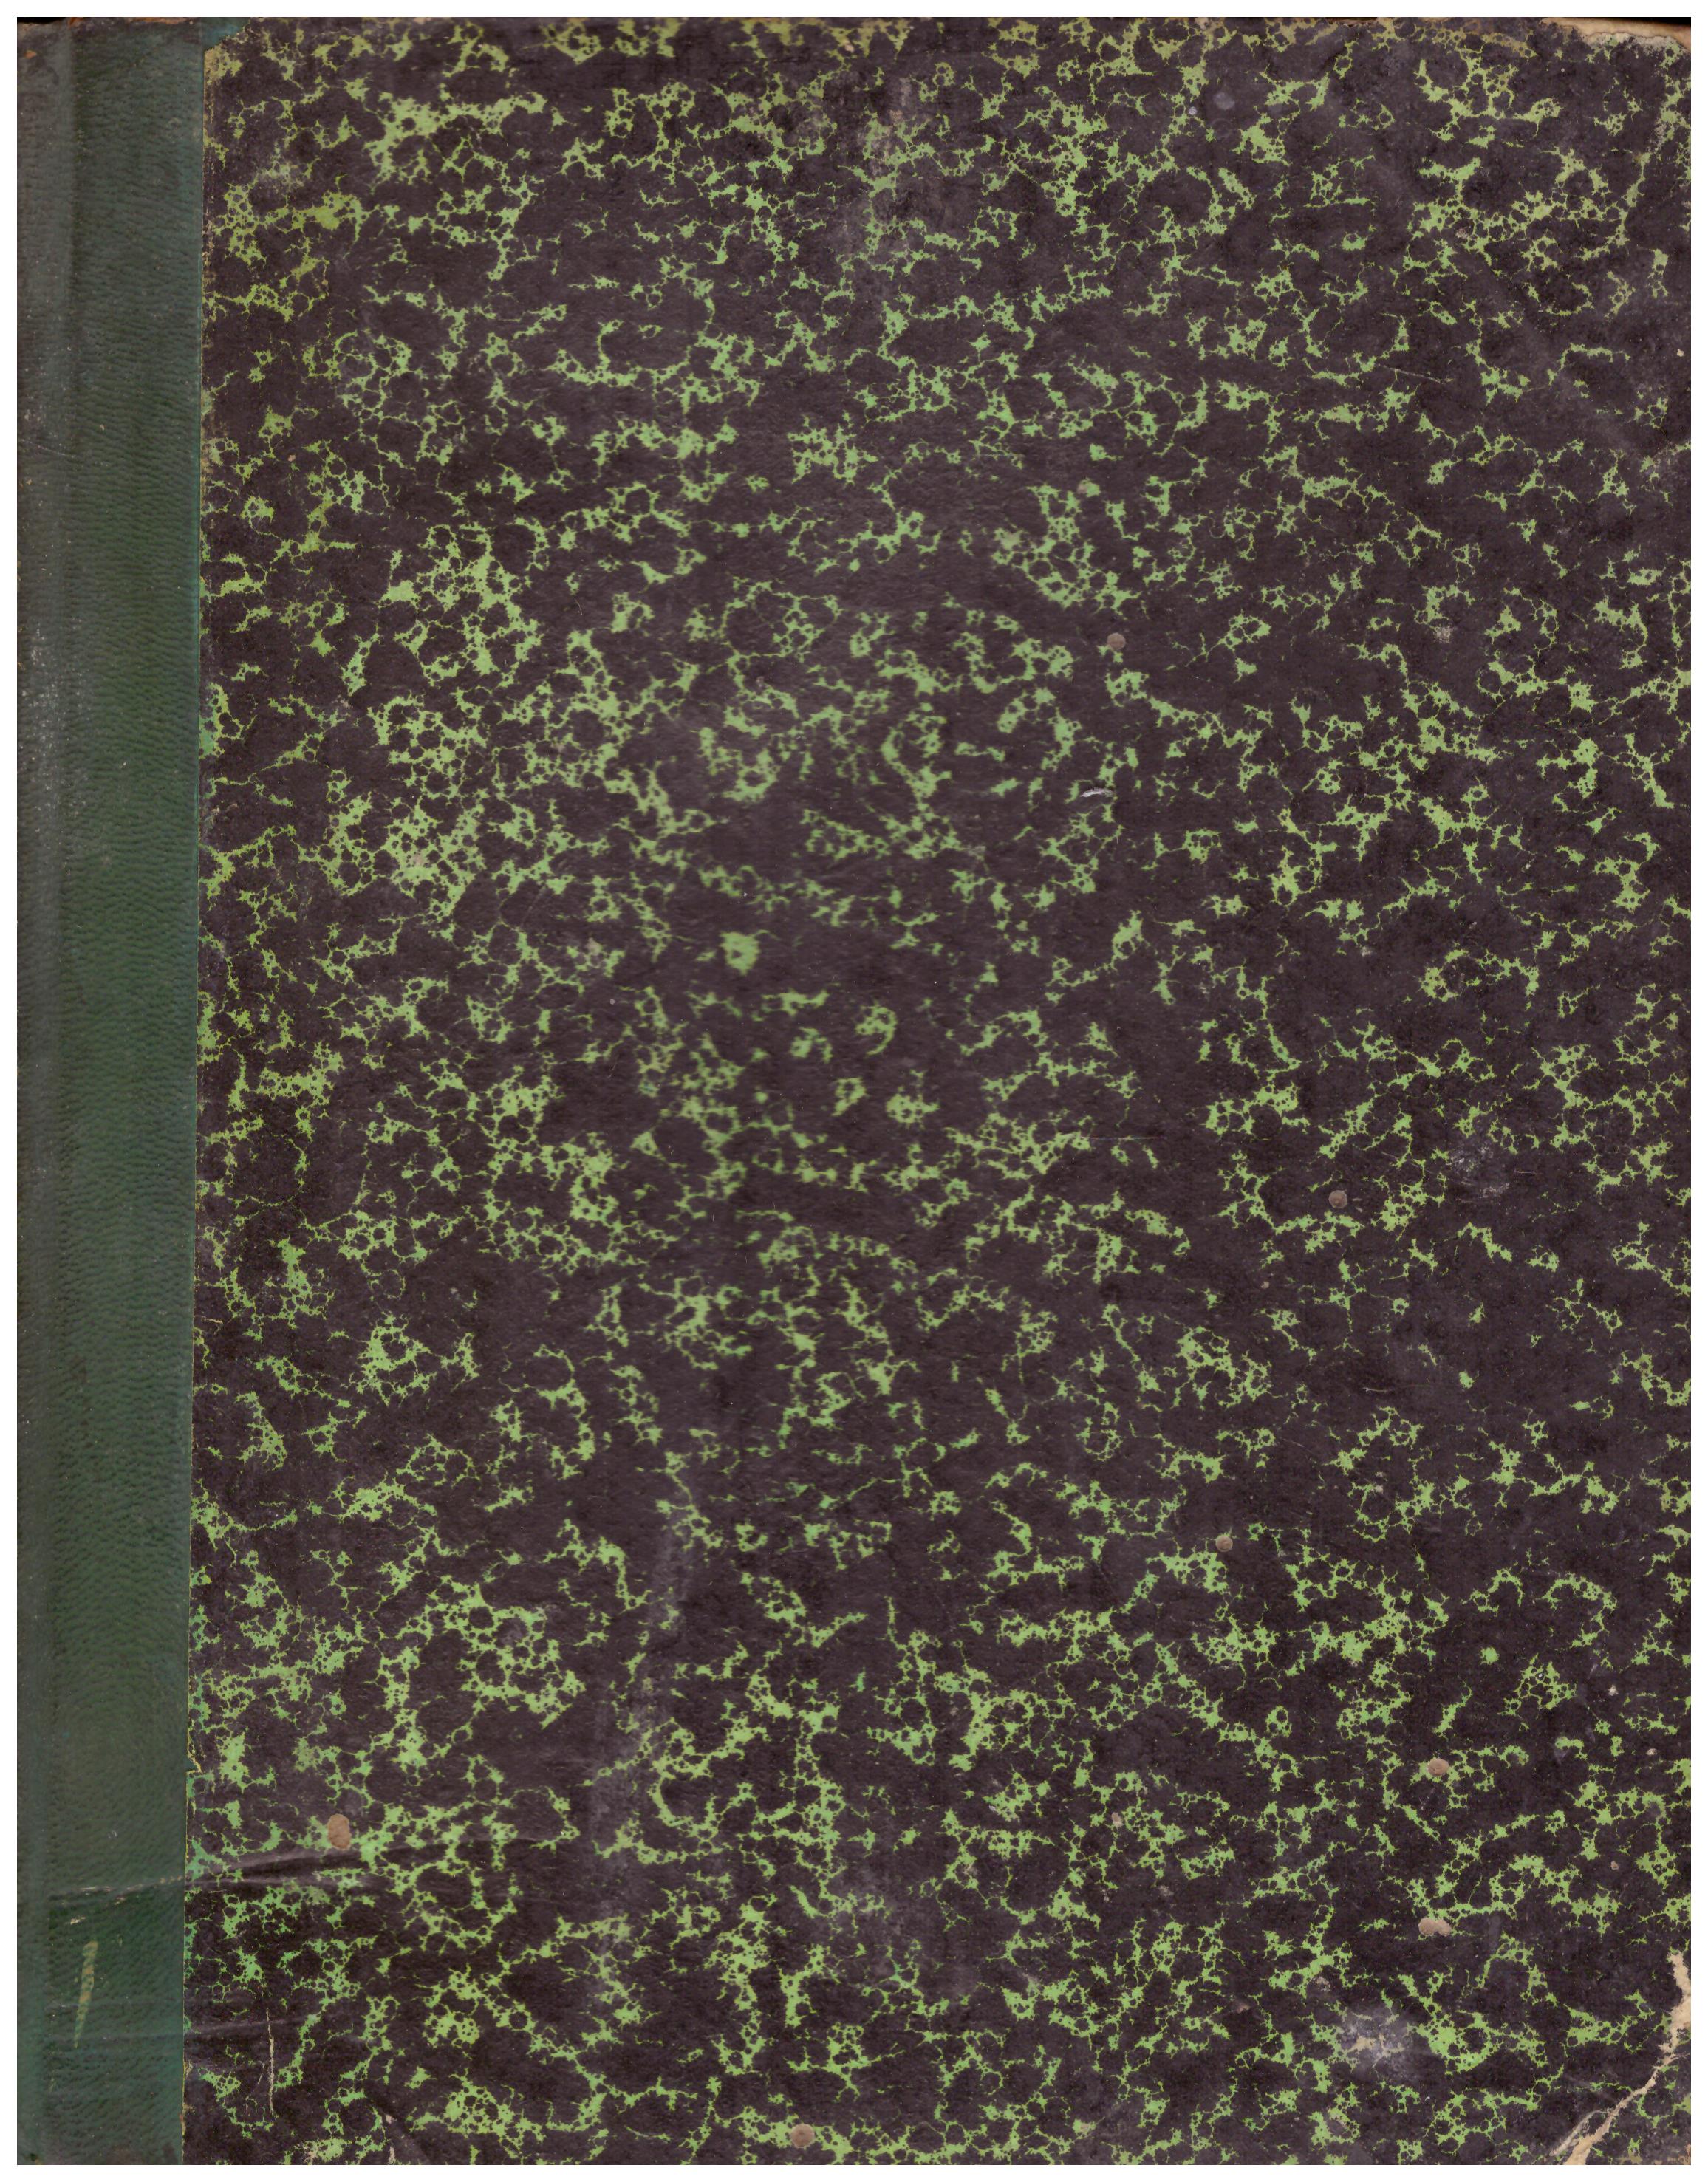 Titolo: Numero rivista 1917  Autore: AA.VV.  Editore: N.D. 1920